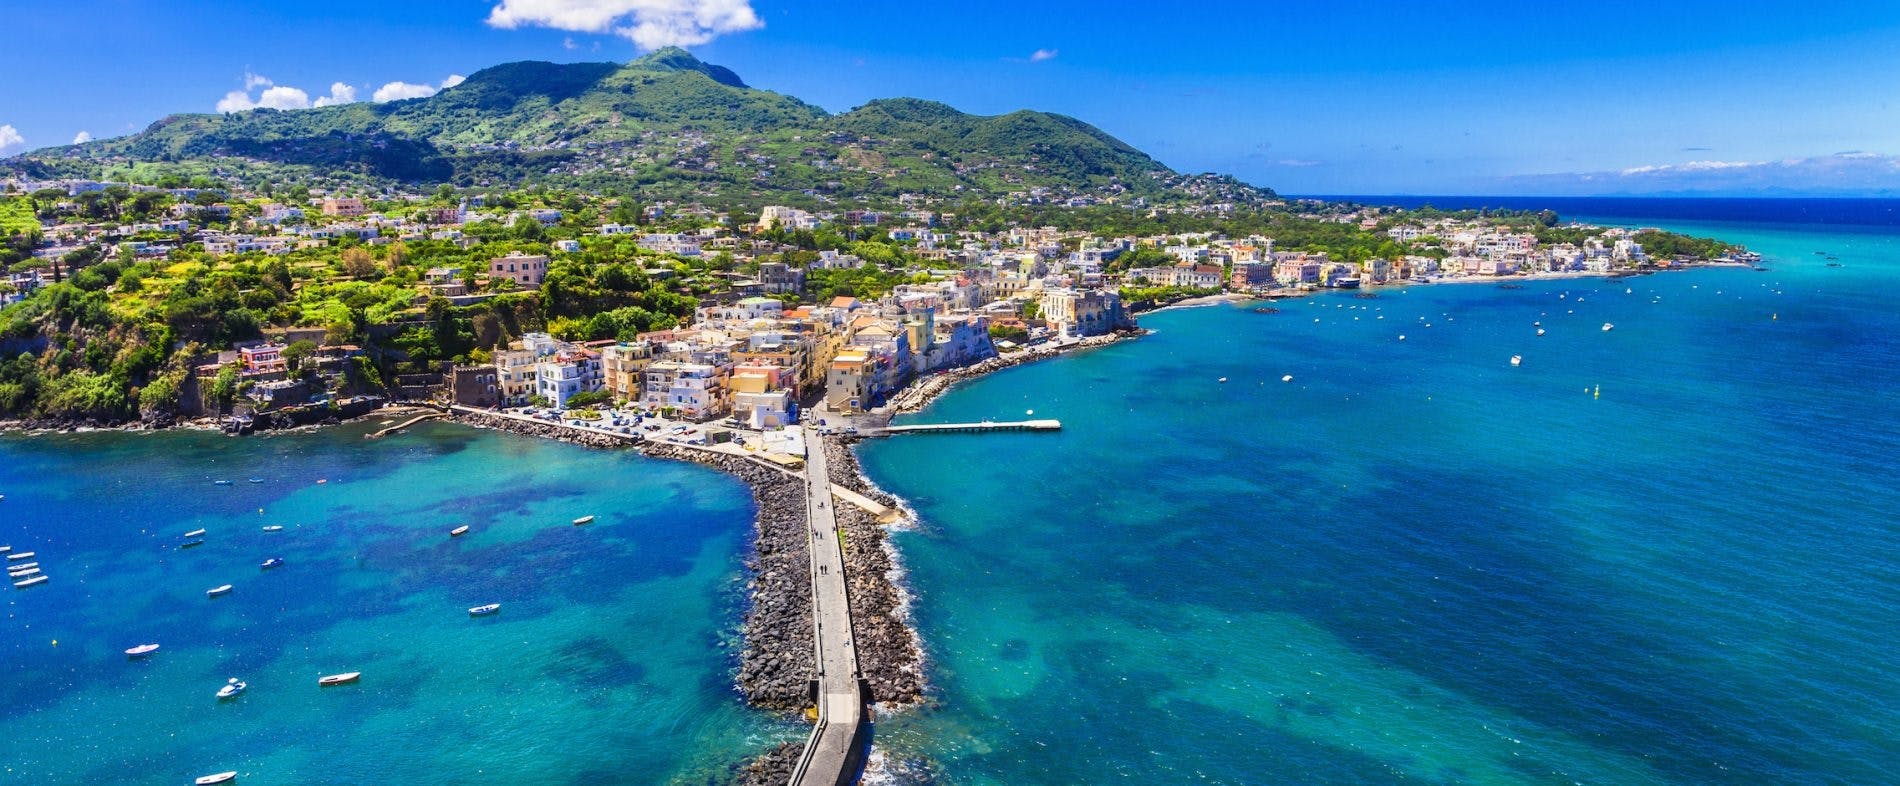 Paseo en barco por Ischia y Procida desde Nápoles